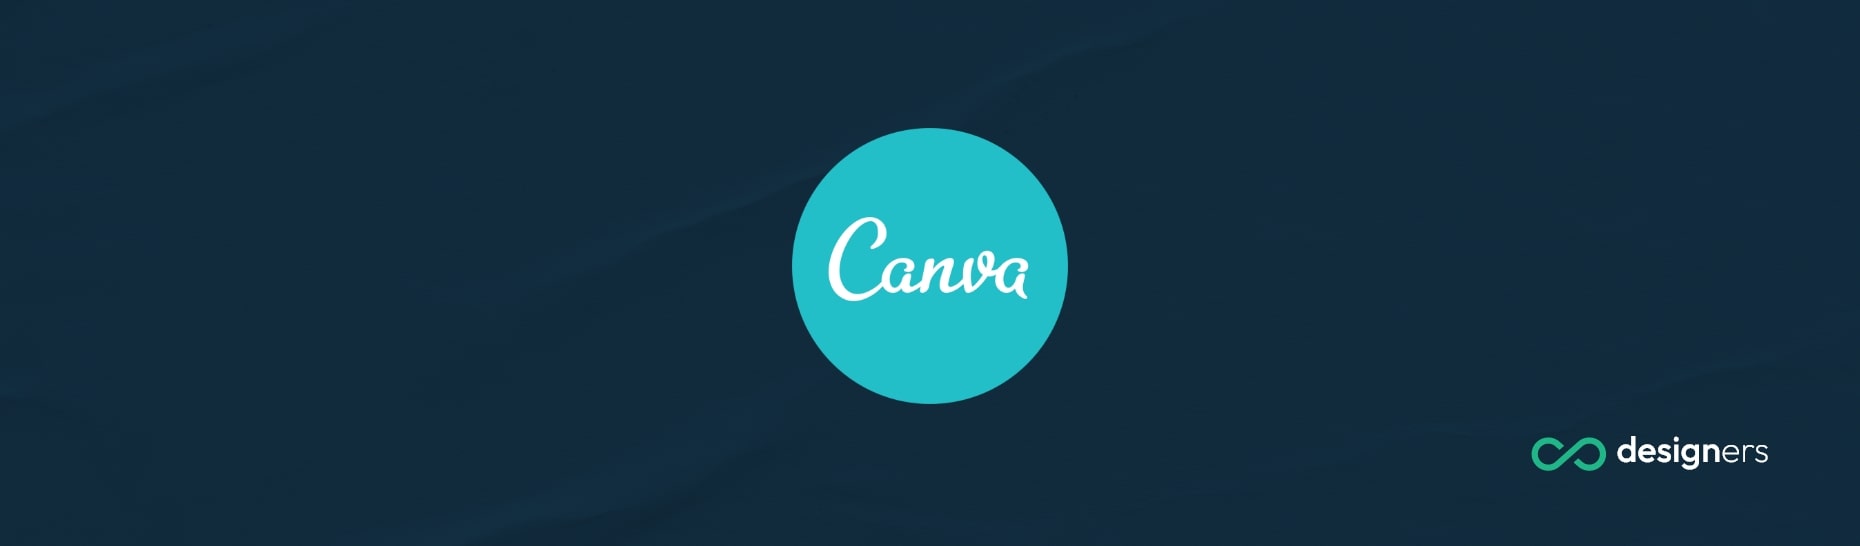 How Do I Contact Canva Customer Service?